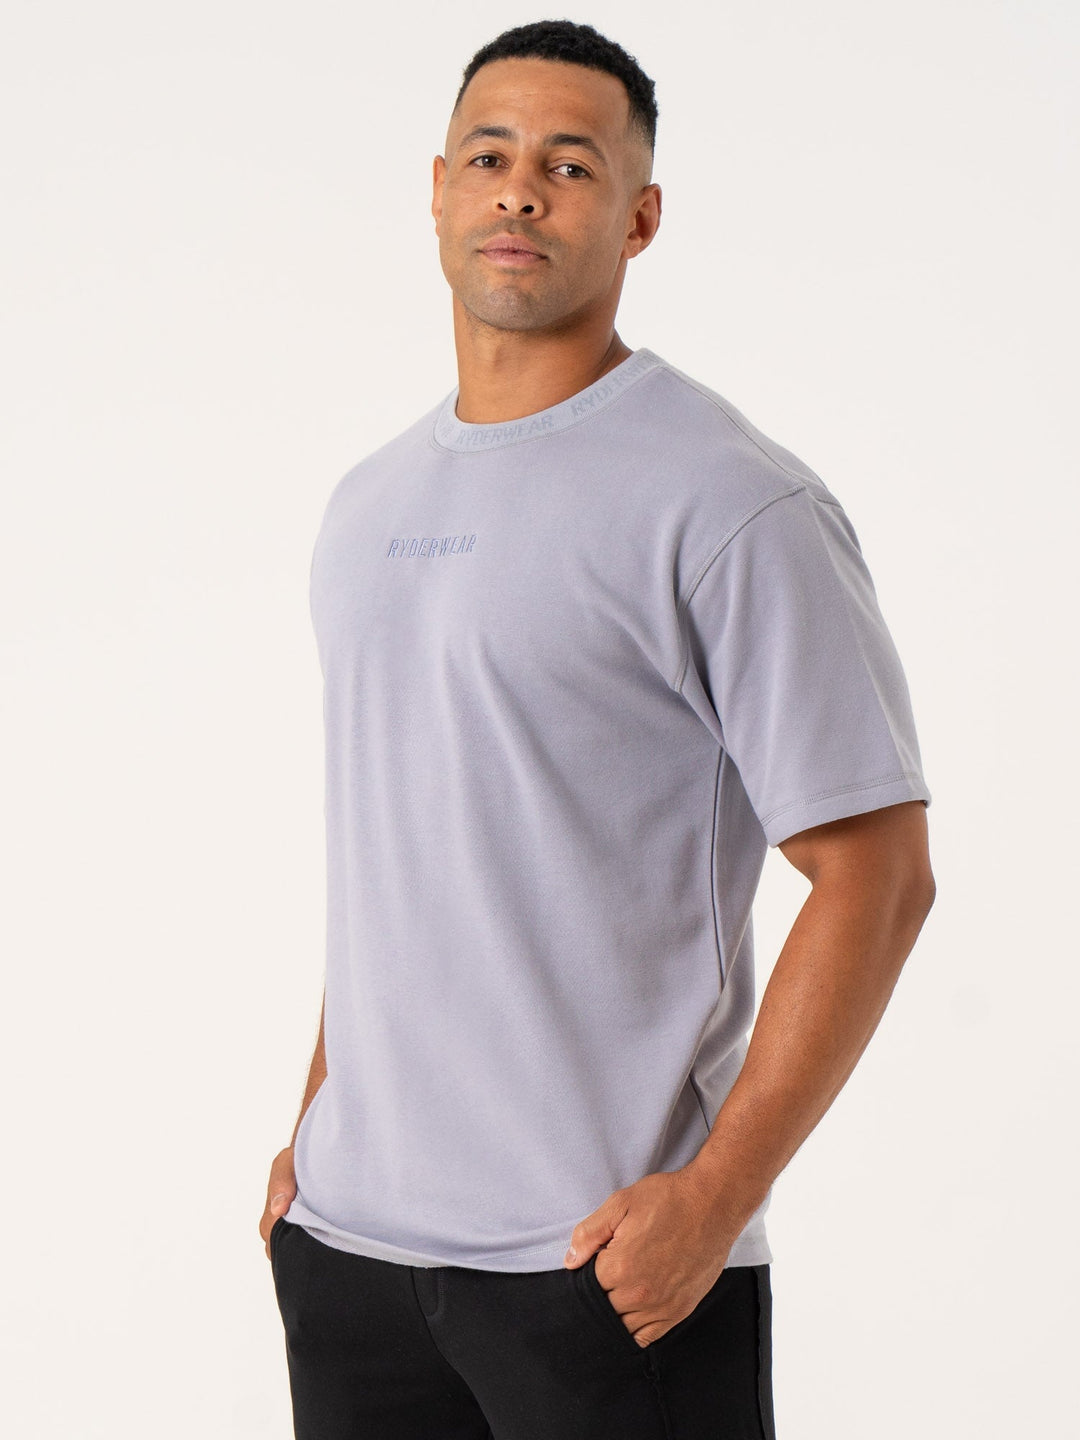 Pursuit Fleece T-Shirt - Lavender Clothing Ryderwear 